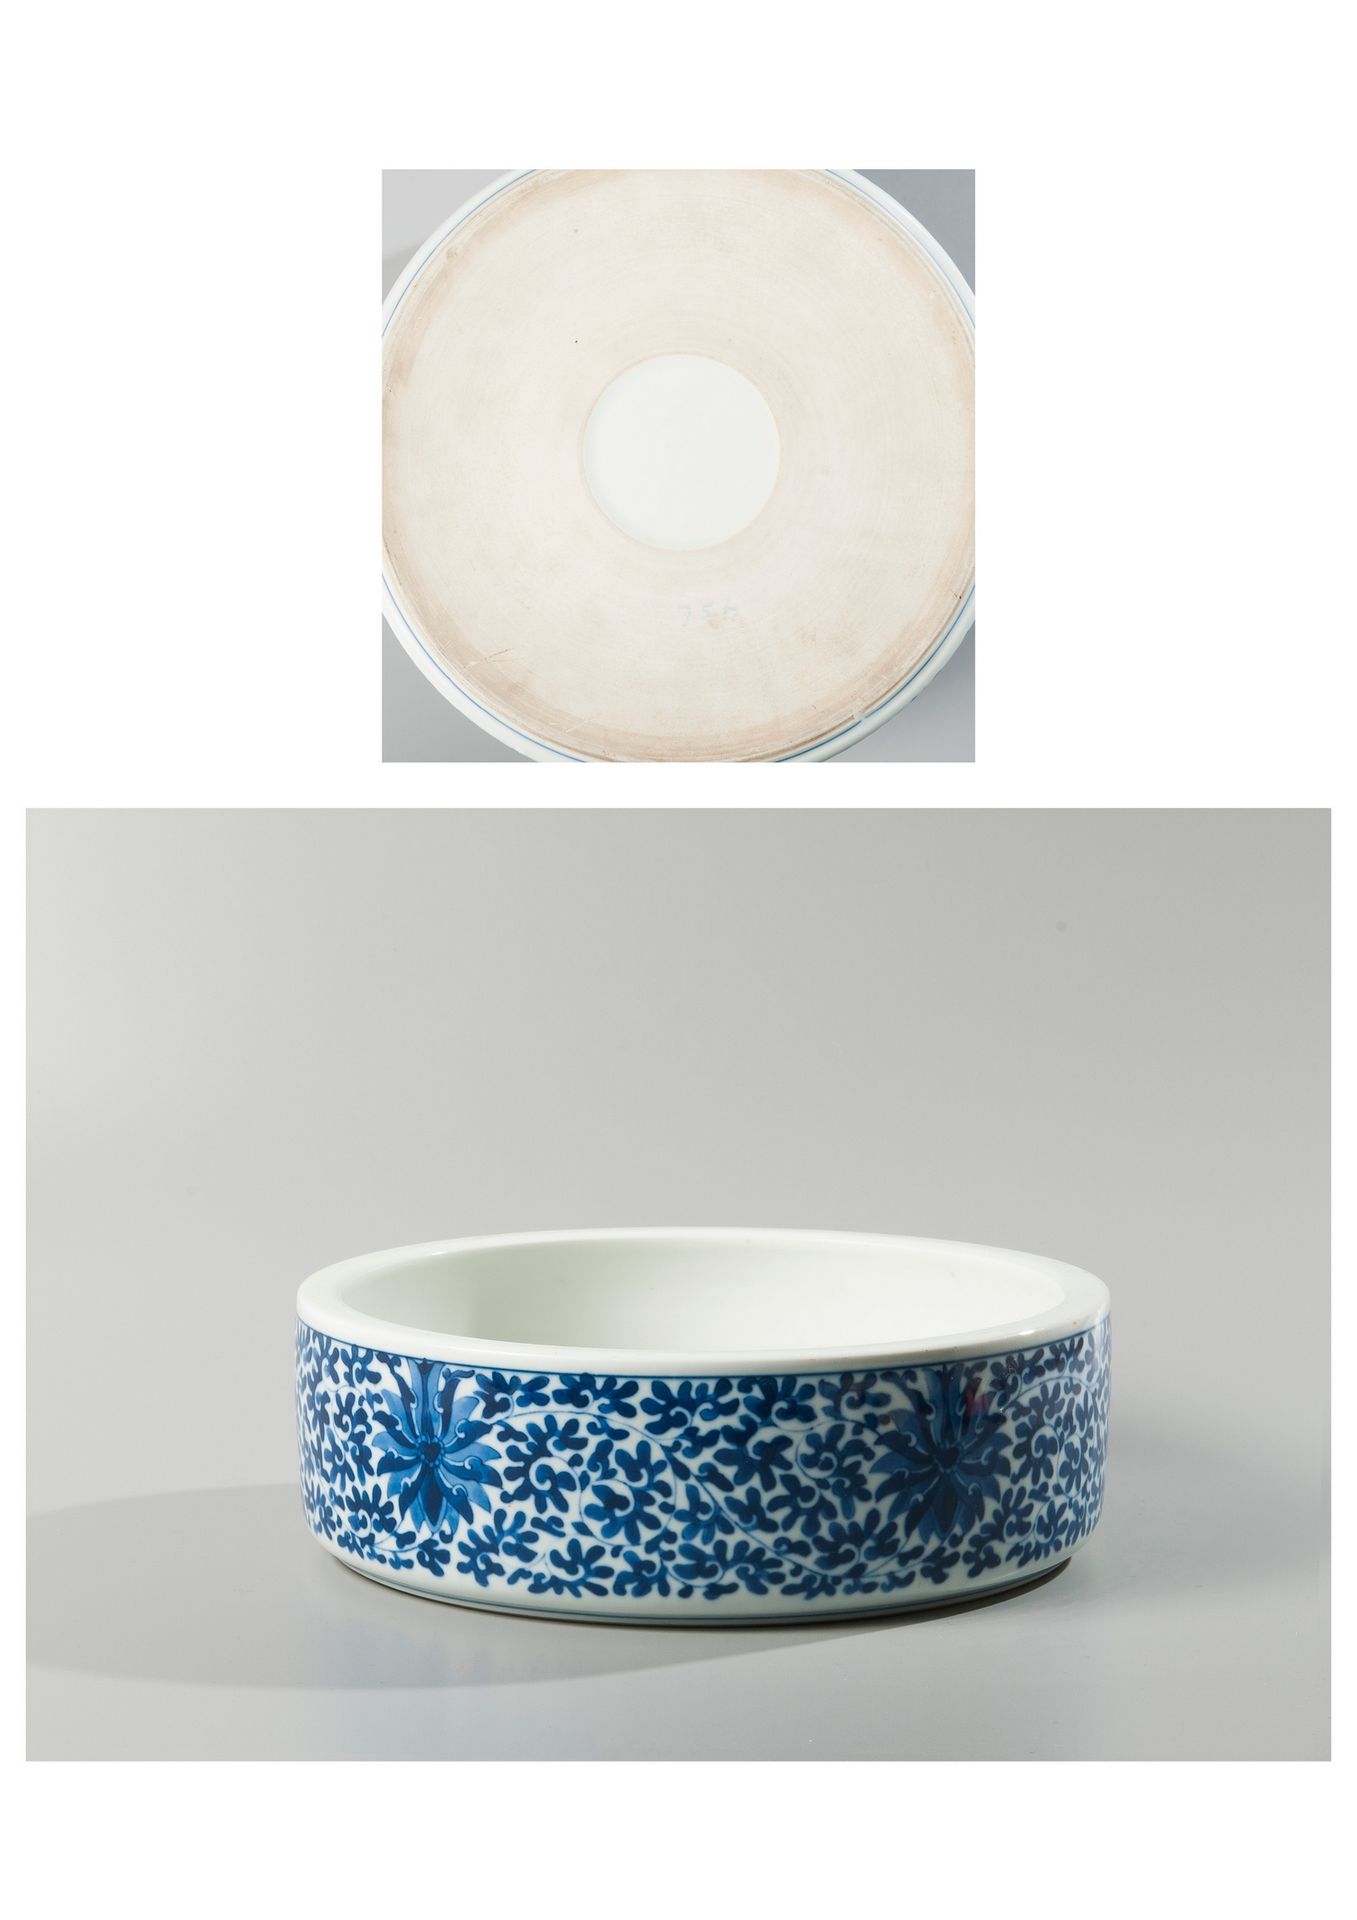 Null CHINA, siglo XX.

Lavabo circular de porcelana esmaltada azul y blanca. Dec&hellip;